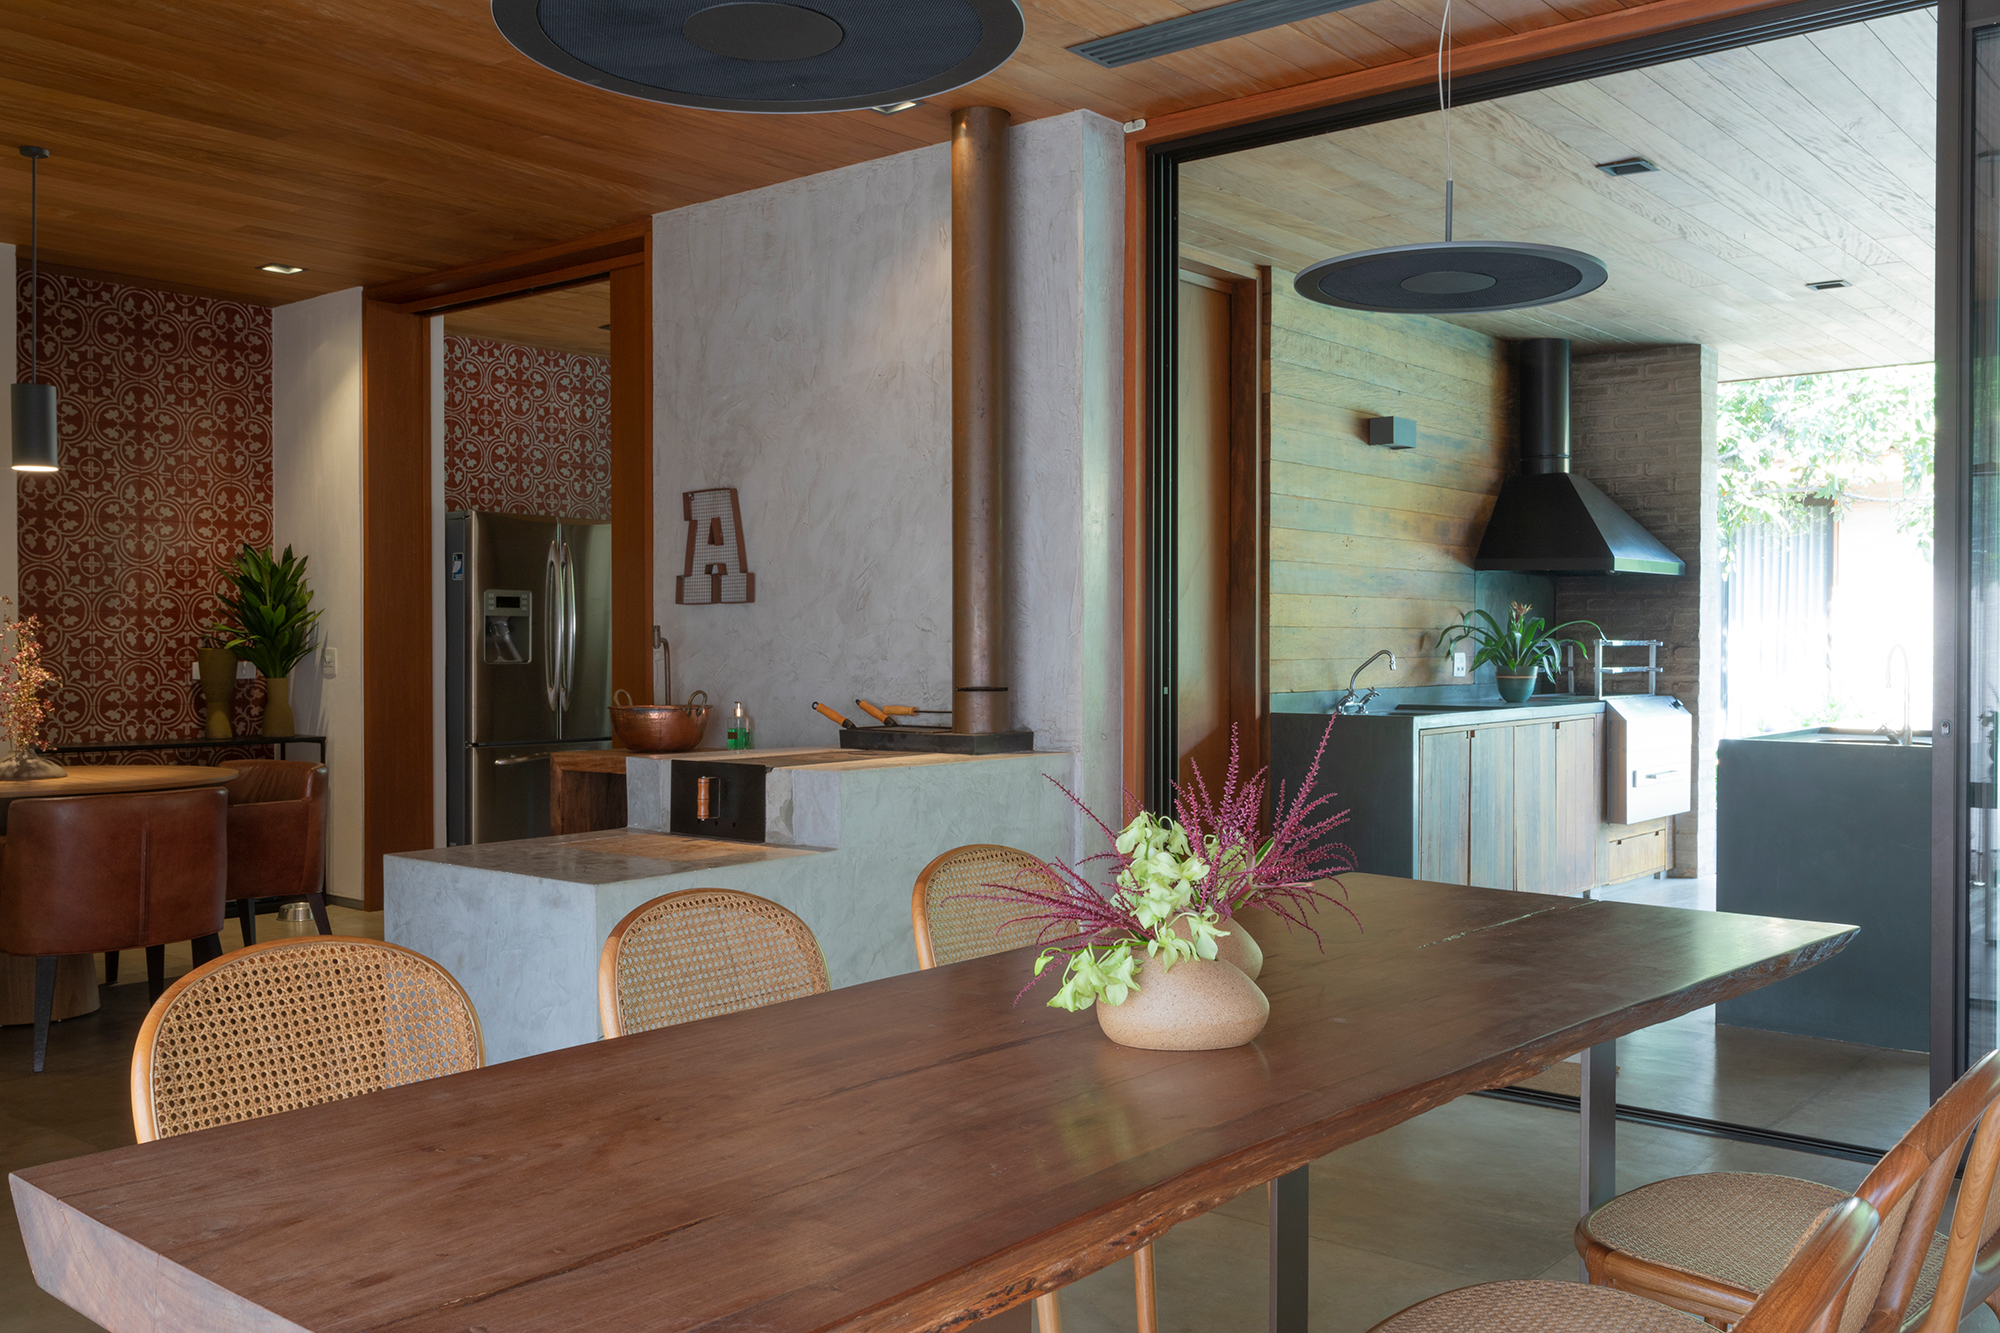 Casa de campo de 818 m² é um verdadeiro refúgio em meio à natureza. Projeto de Daniel Fromer. Na foto, cozinha e sala de jantar com fogao a lenha e mesa de madeira.